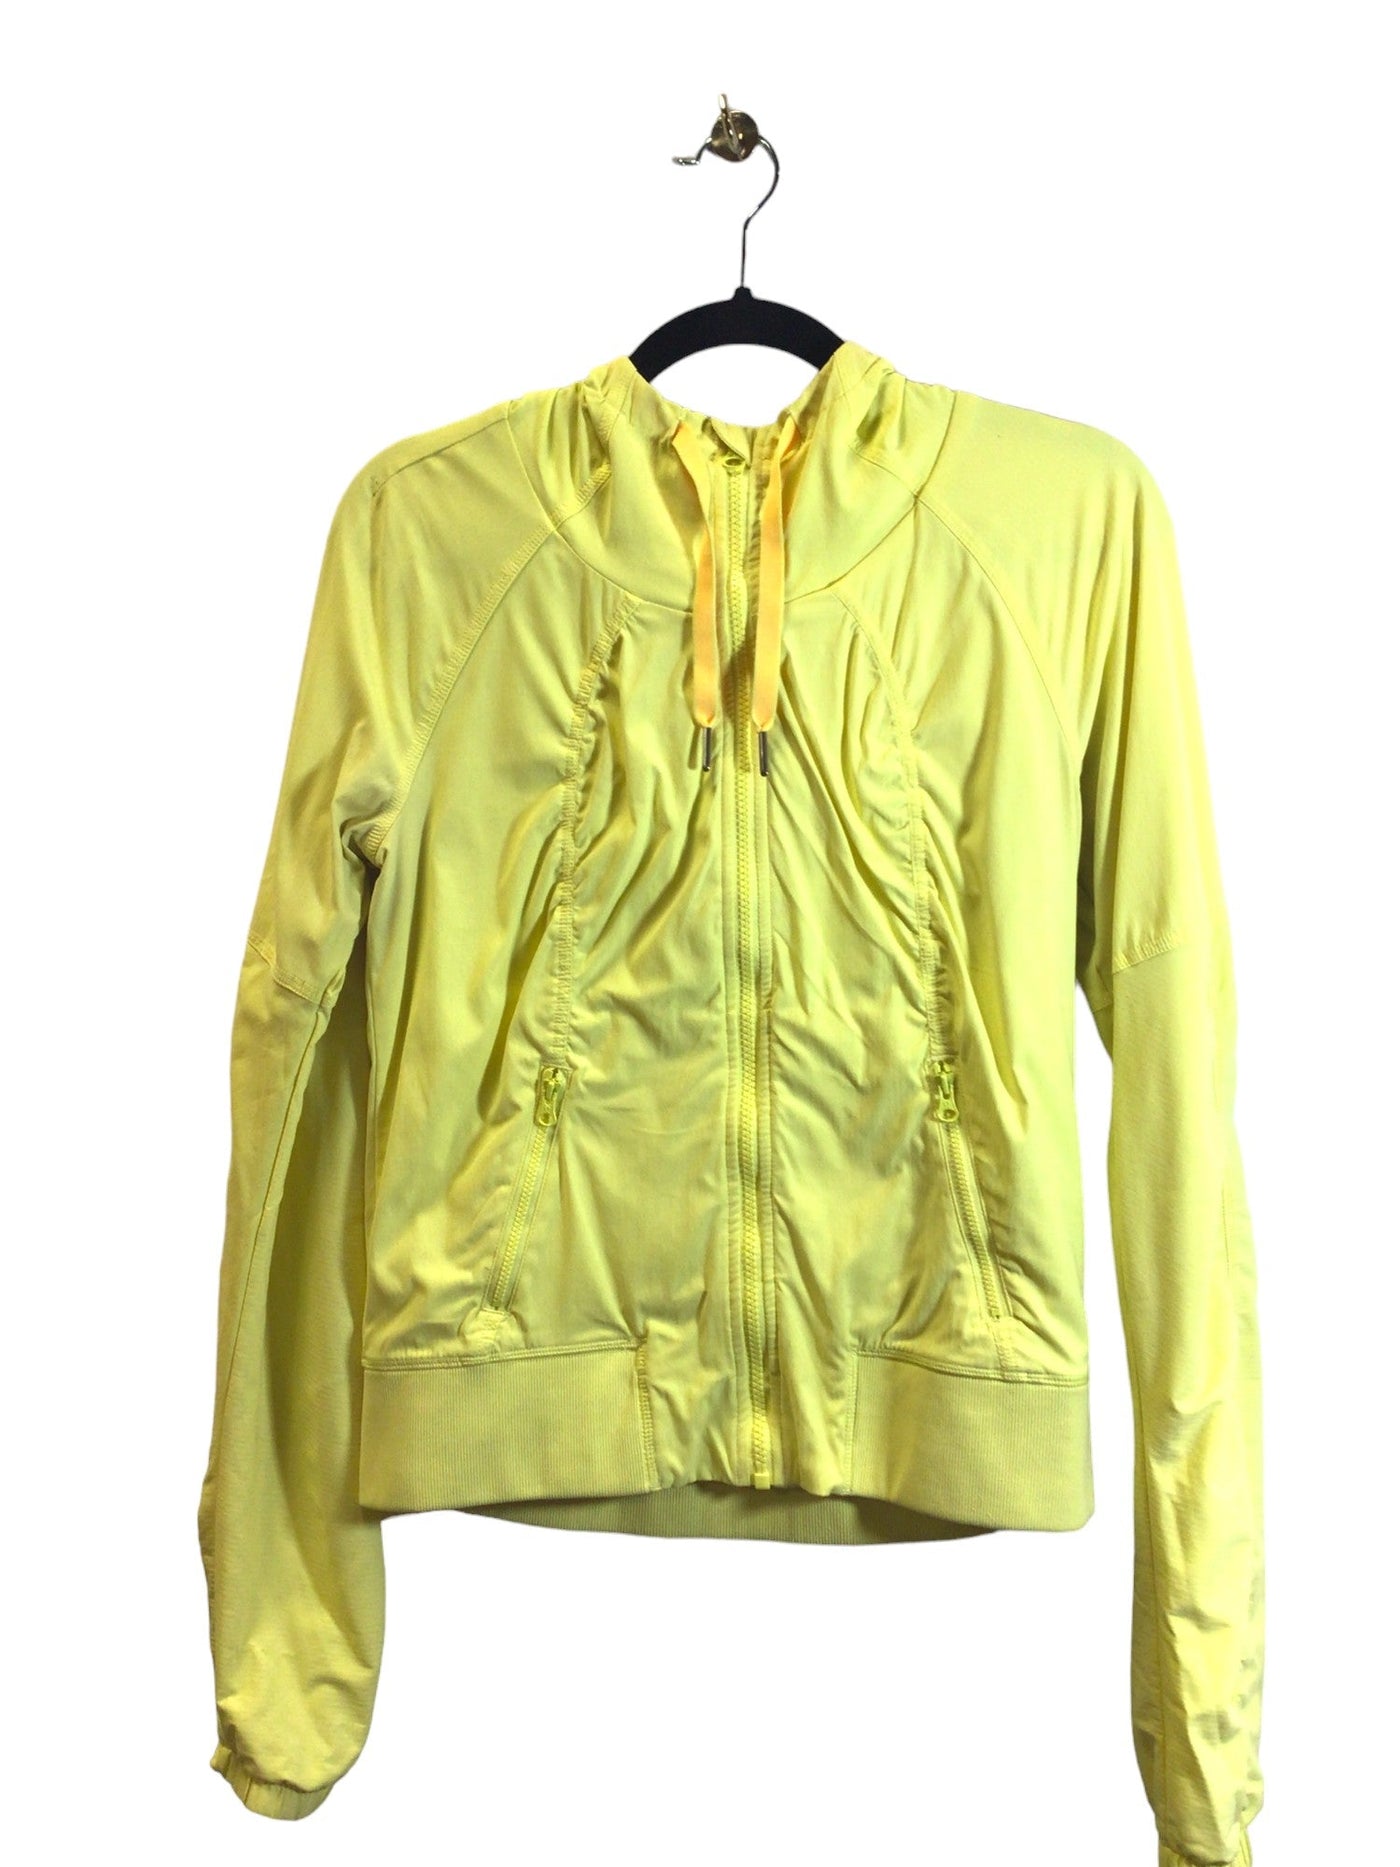 UNBRANDED Women Activewear Jackets Regular fit in Yellow - Size S | 13.49 $ KOOP